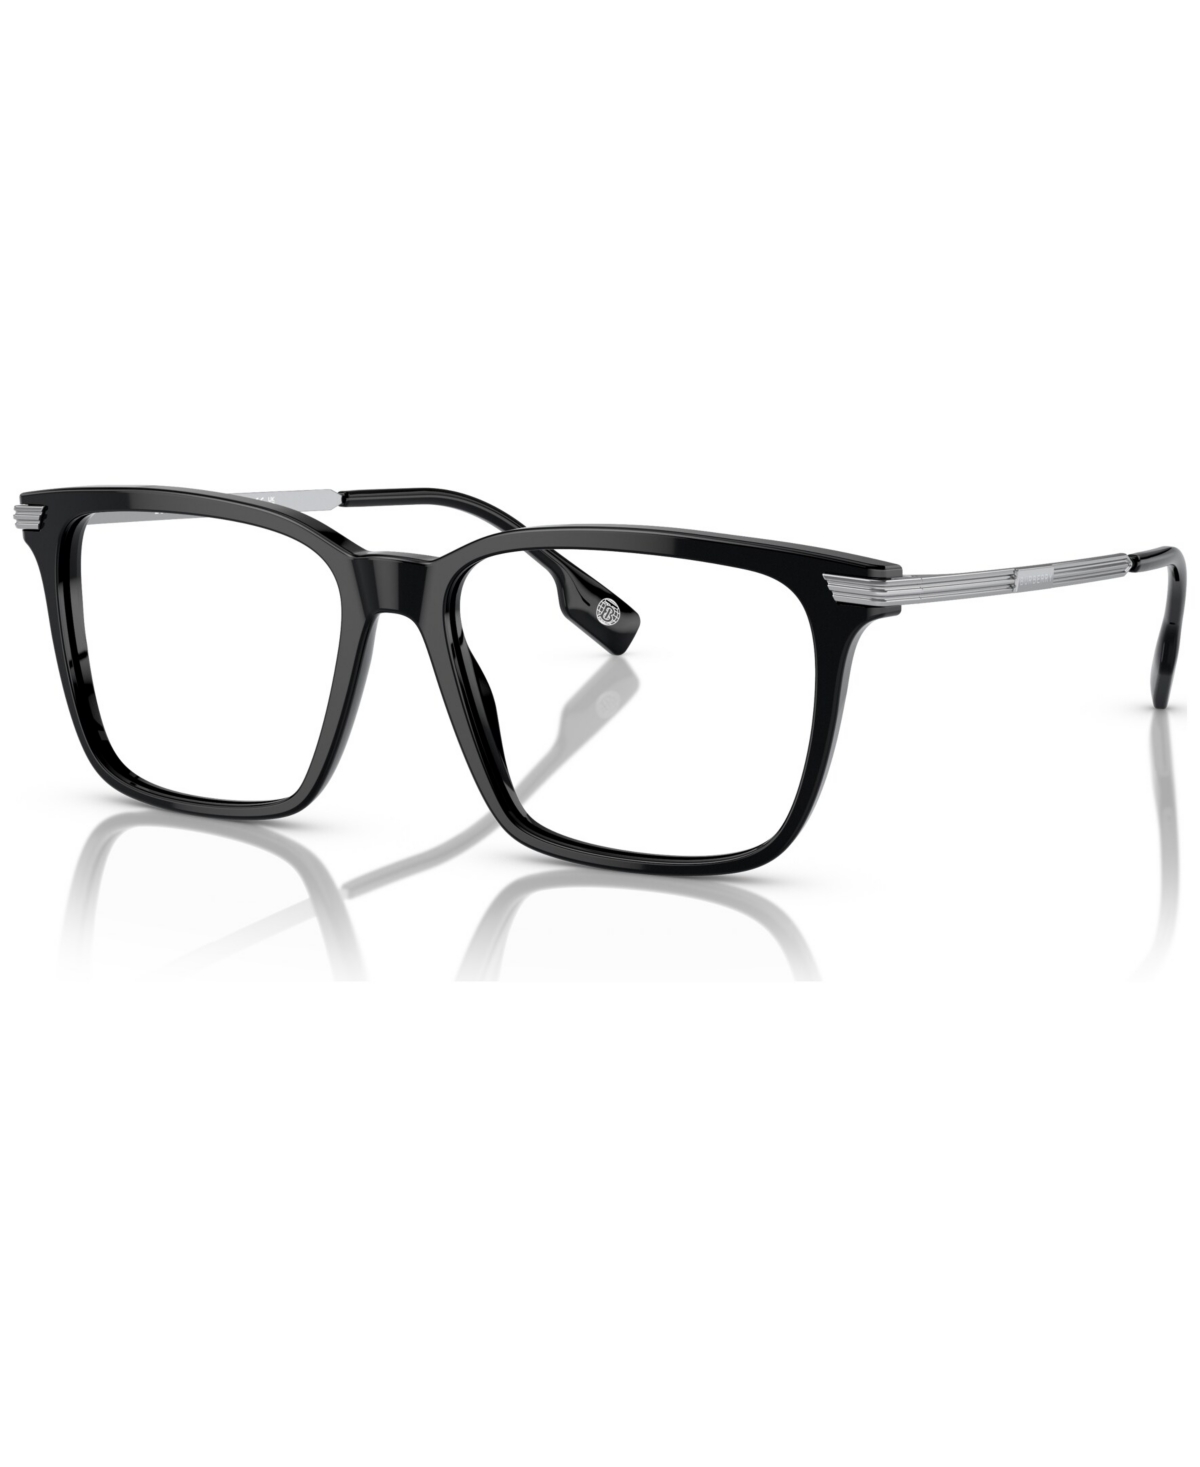 Men's Square Eyeglasses, BE2378 53 - Dark Havana